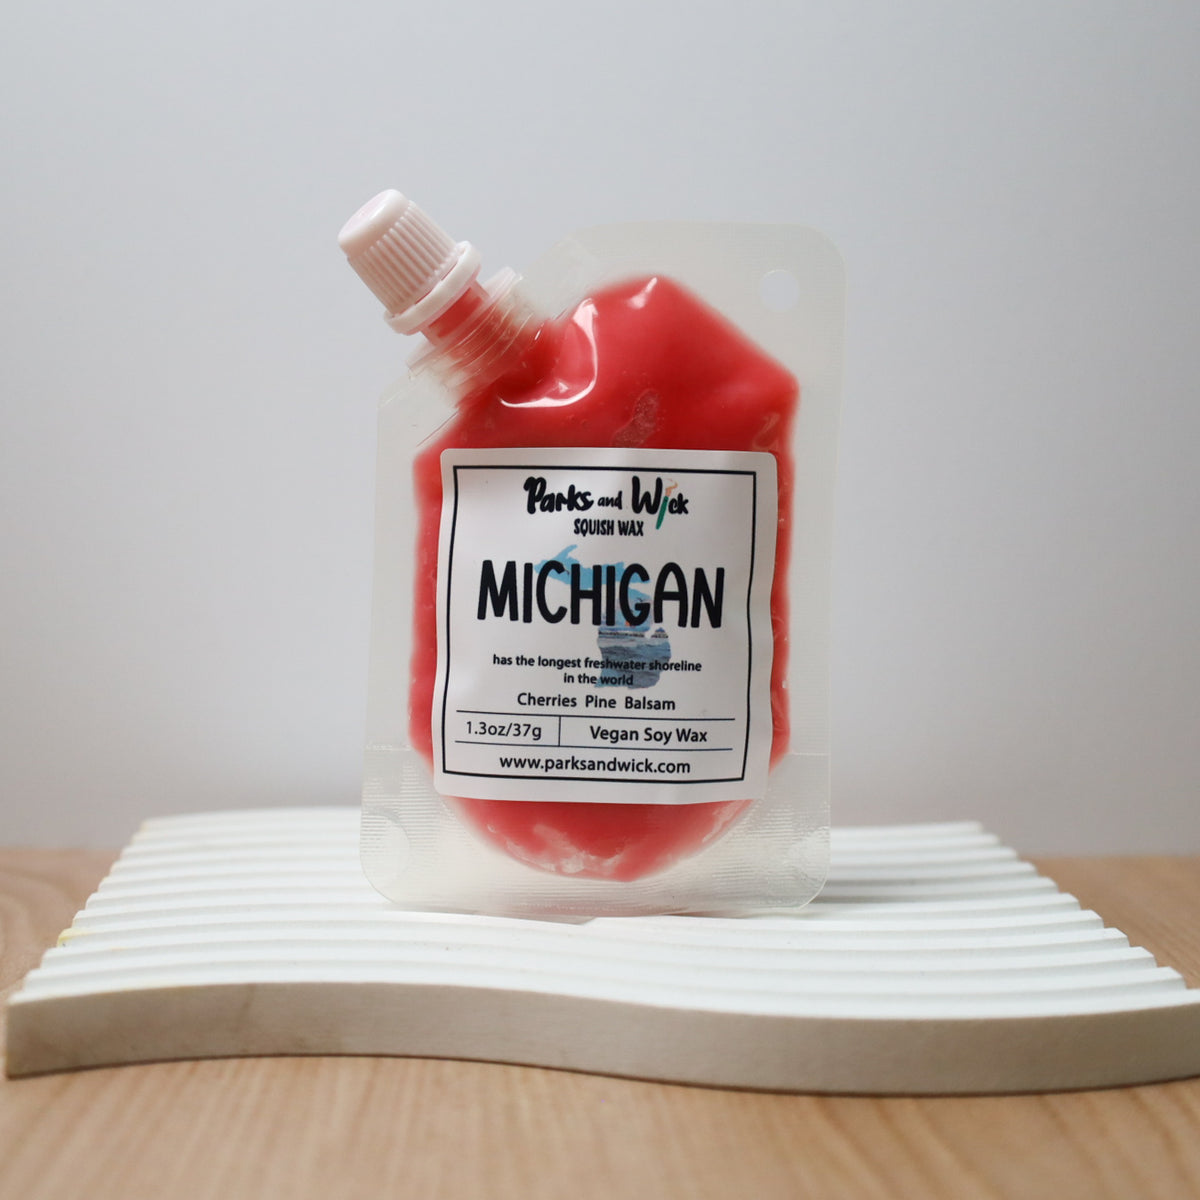 Michigan State Squish Wax